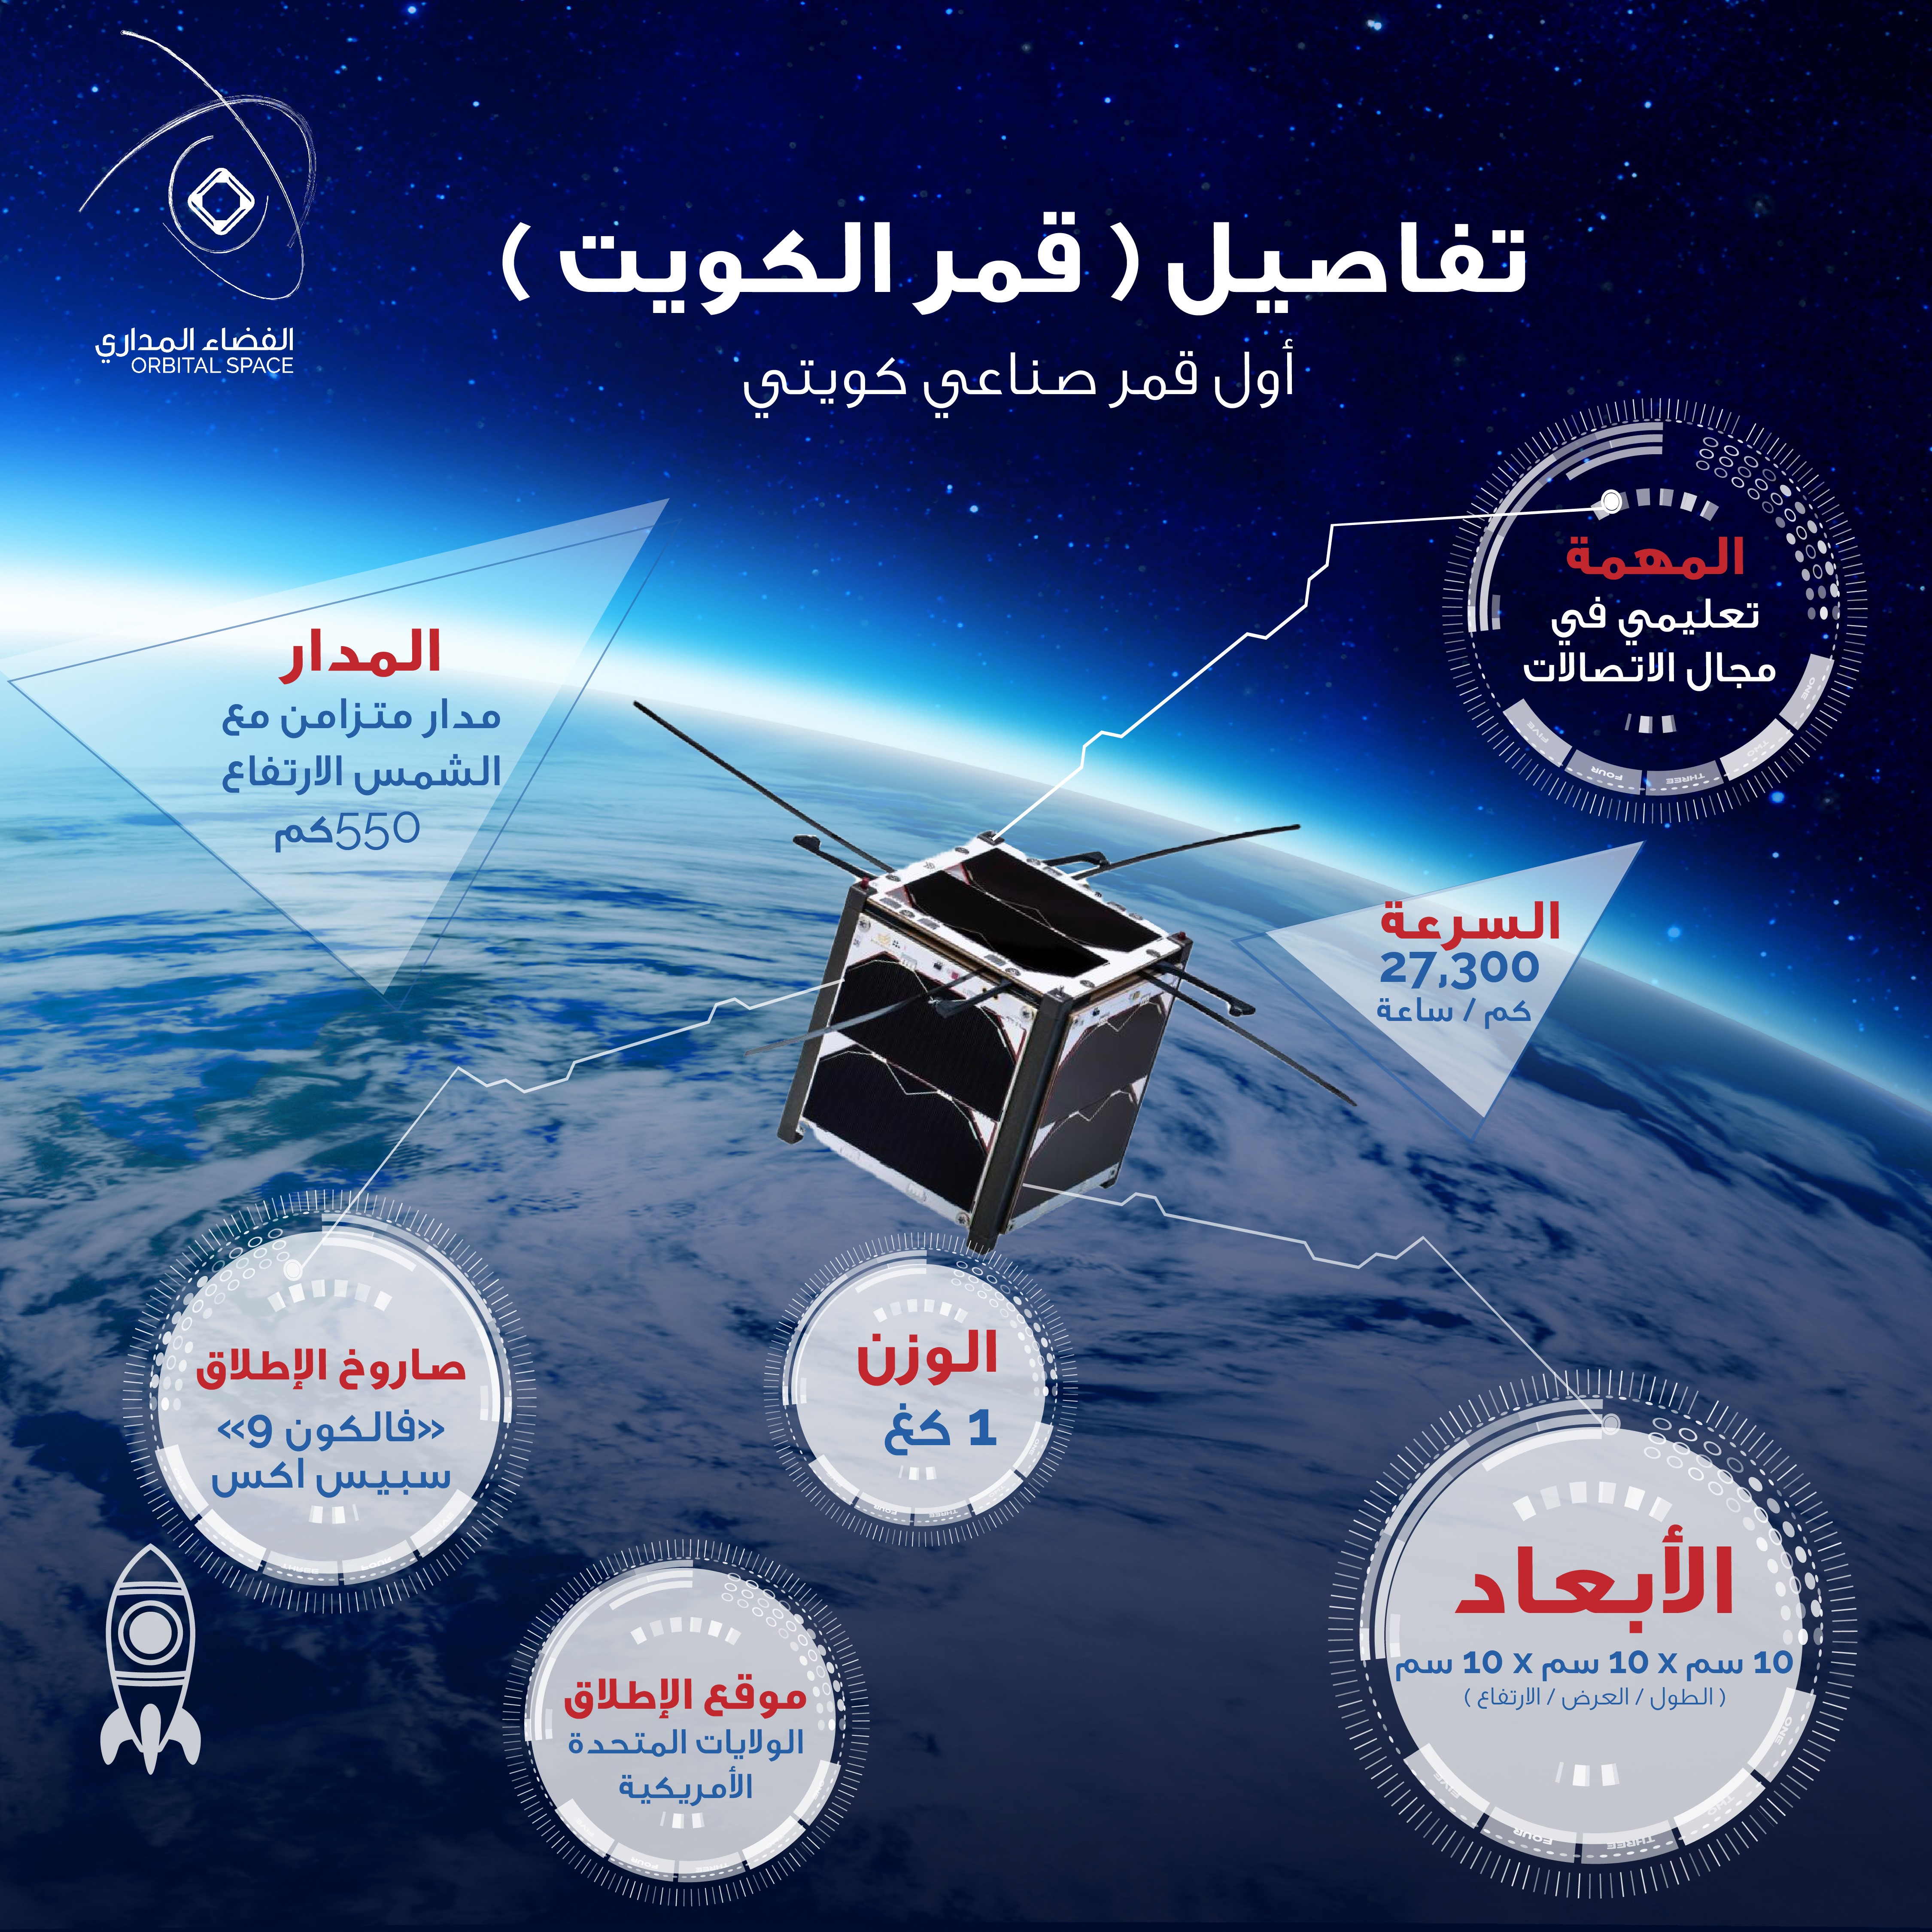 اول قمر اصطناعي كويتي  (قمر الكويت)